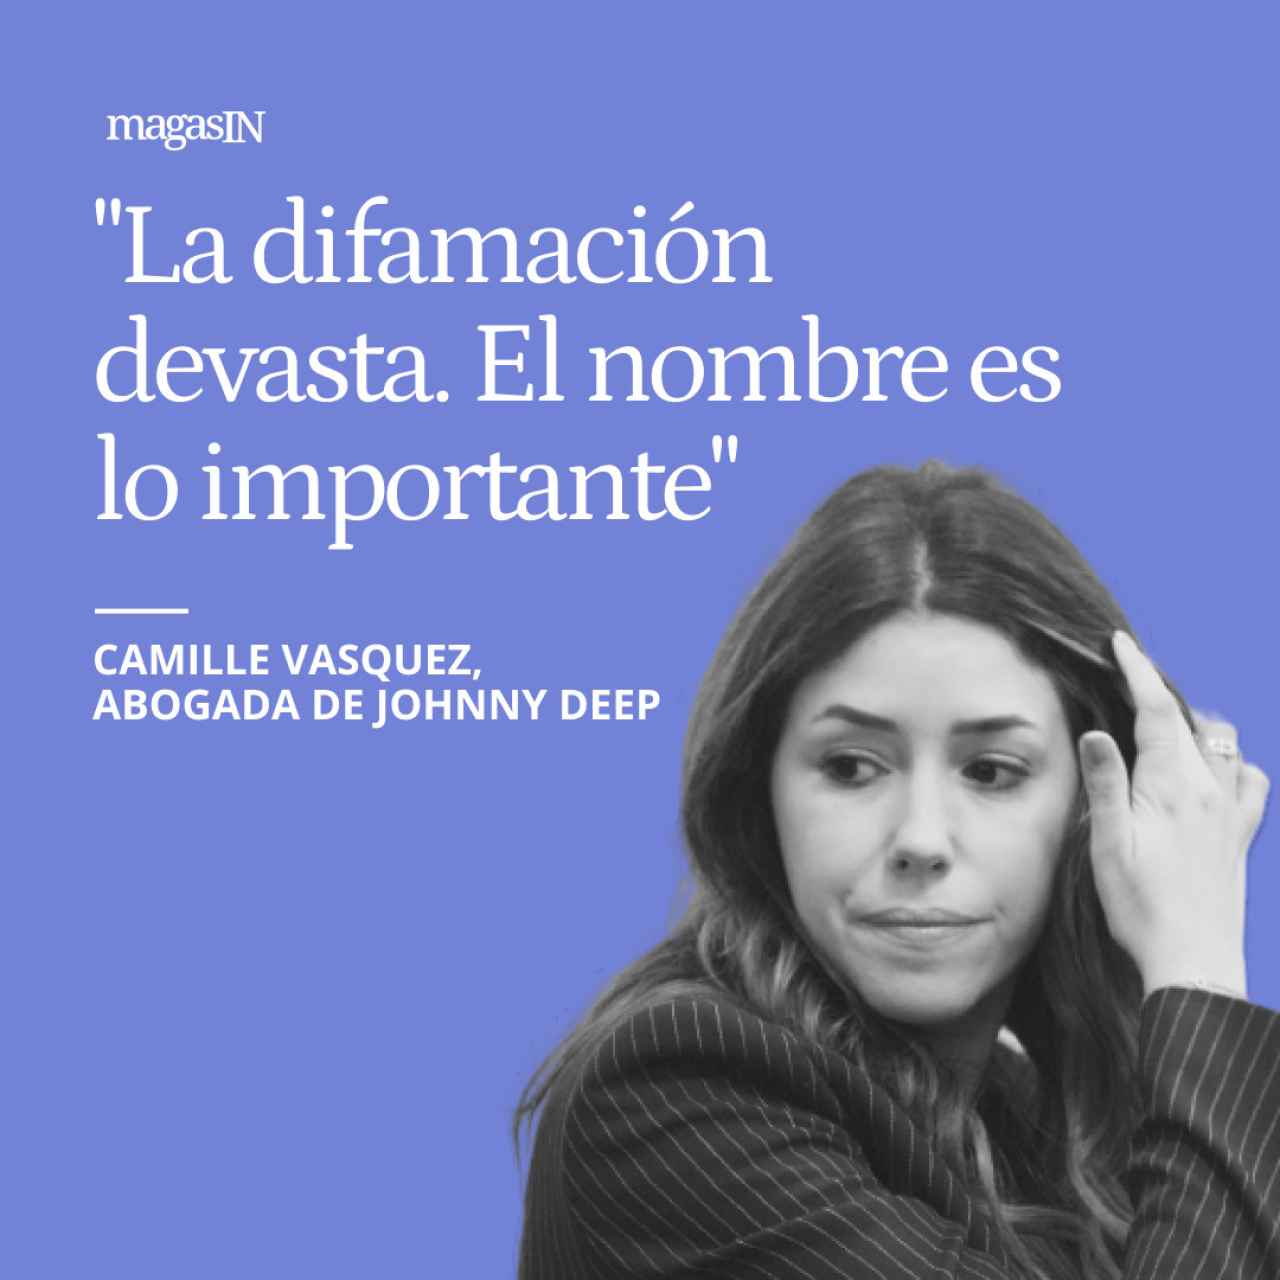 Camille Vasquez, abogada de Johnny Depp, en exclusiva: "La difamación devasta. El nombre es lo importante"